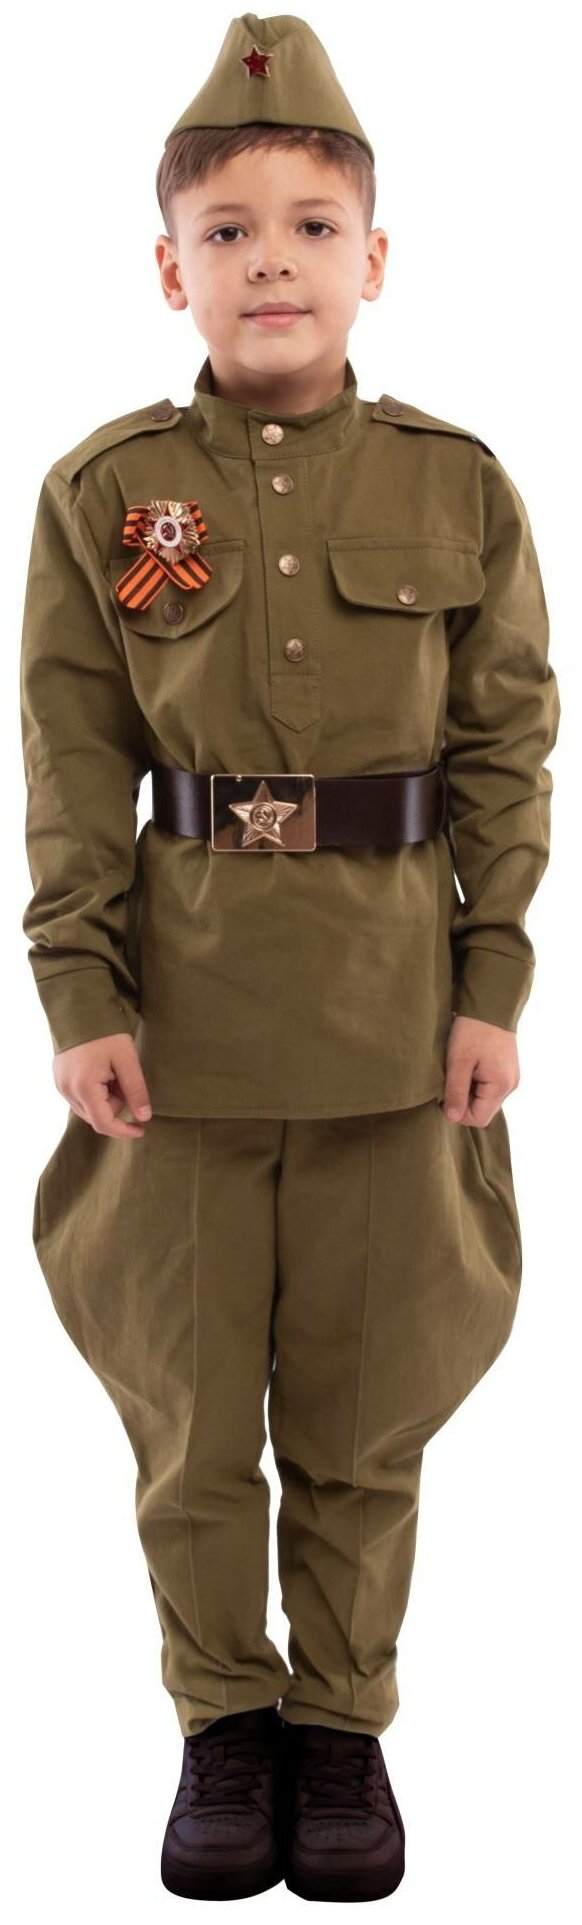 Солдат хлопок брюки Галифе (2164 к-22), размер 140, цвет мультиколор, бренд Пуговка